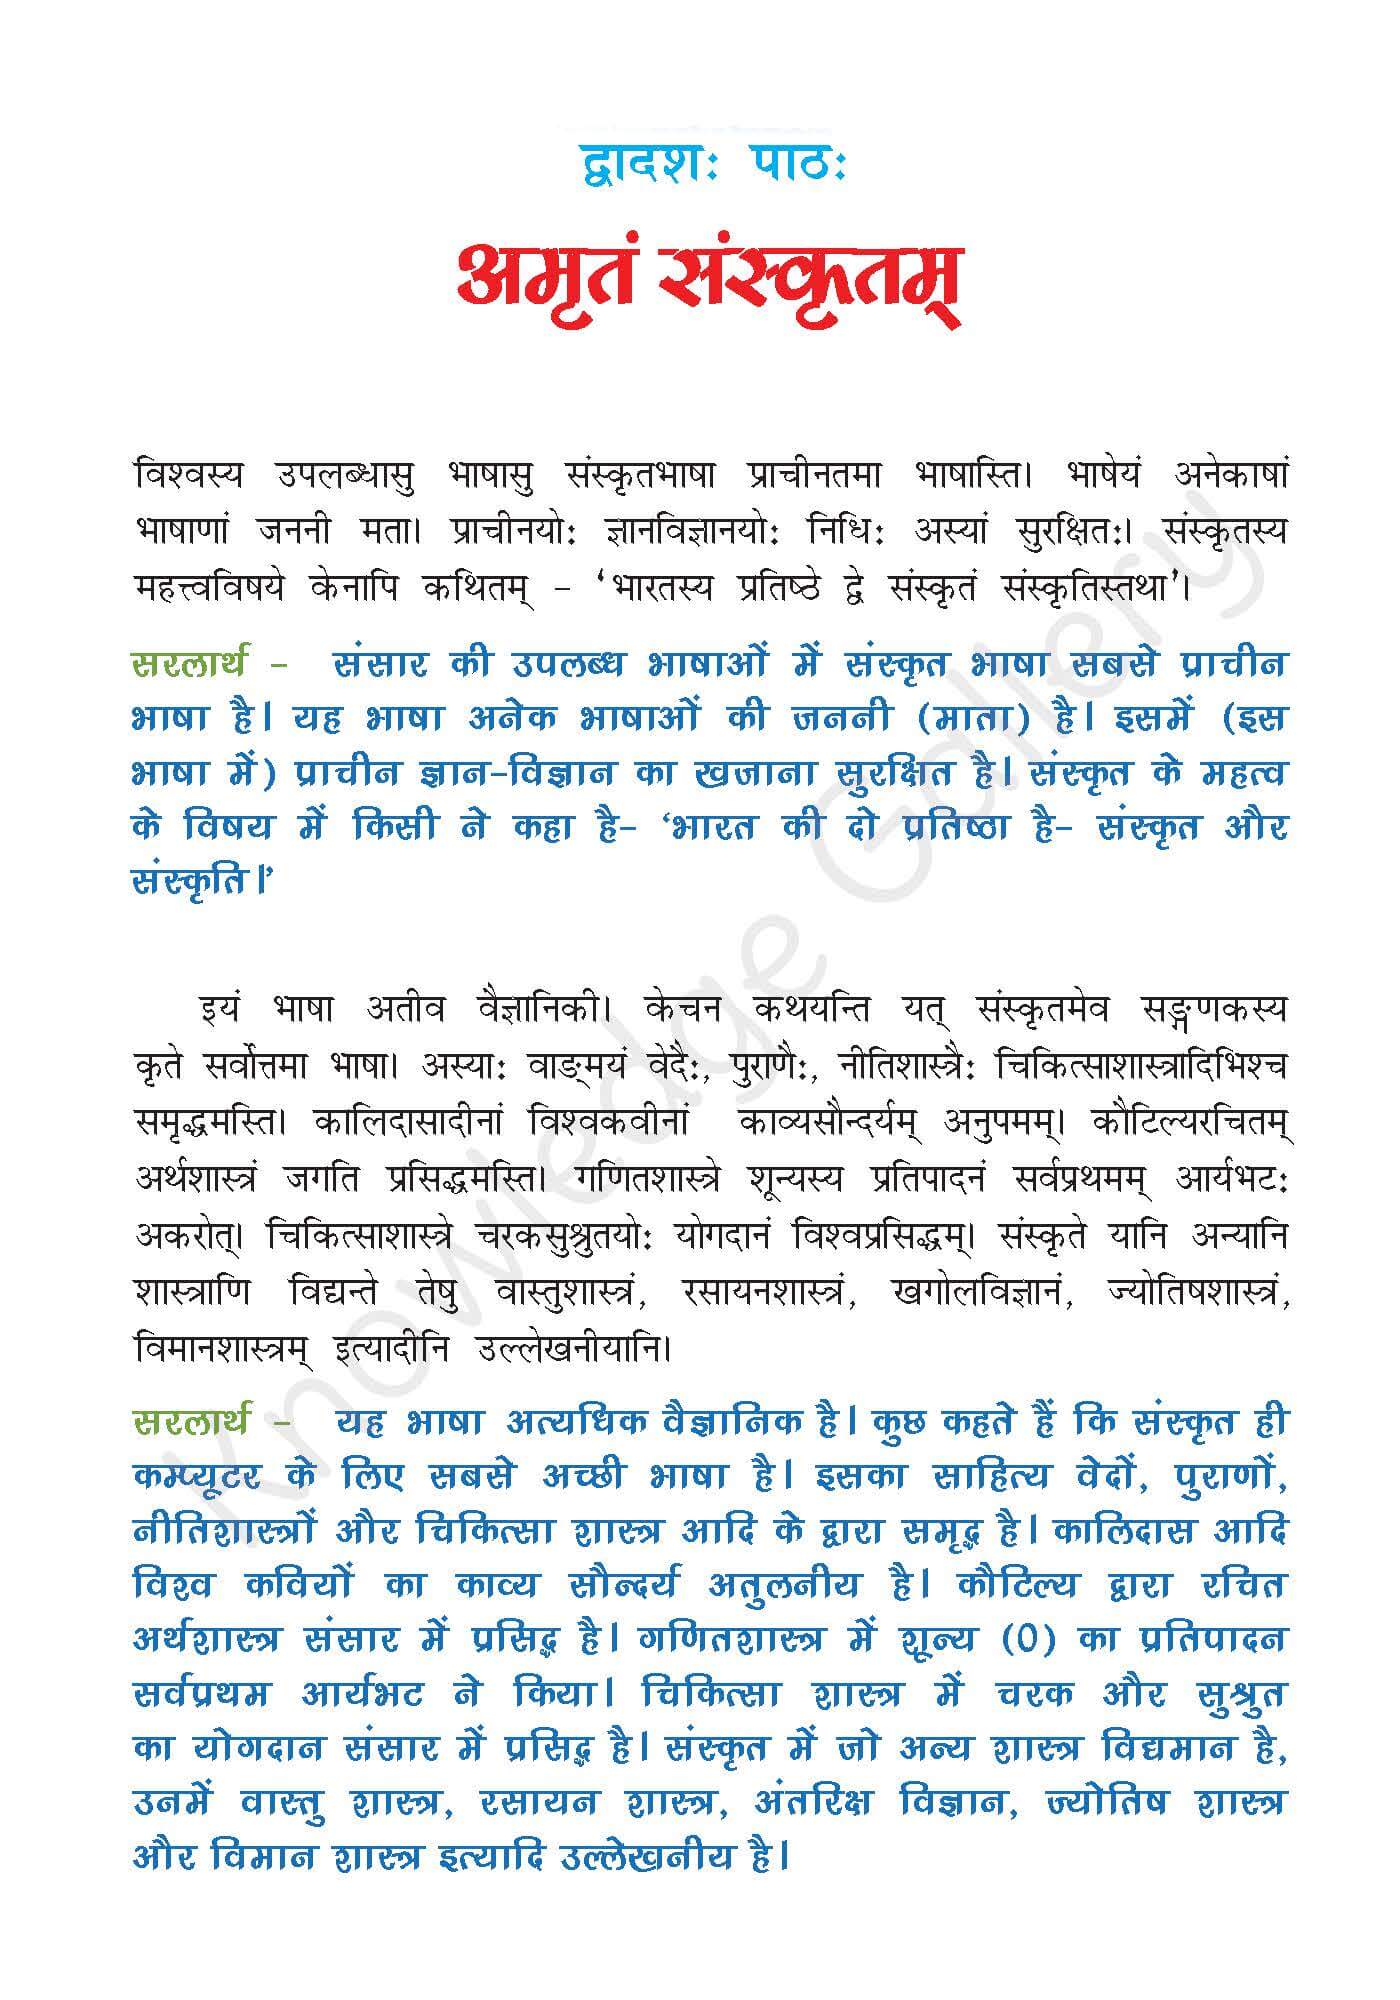 NCERT Solution For Class 7 Sanskrit Chapter 12 part 1